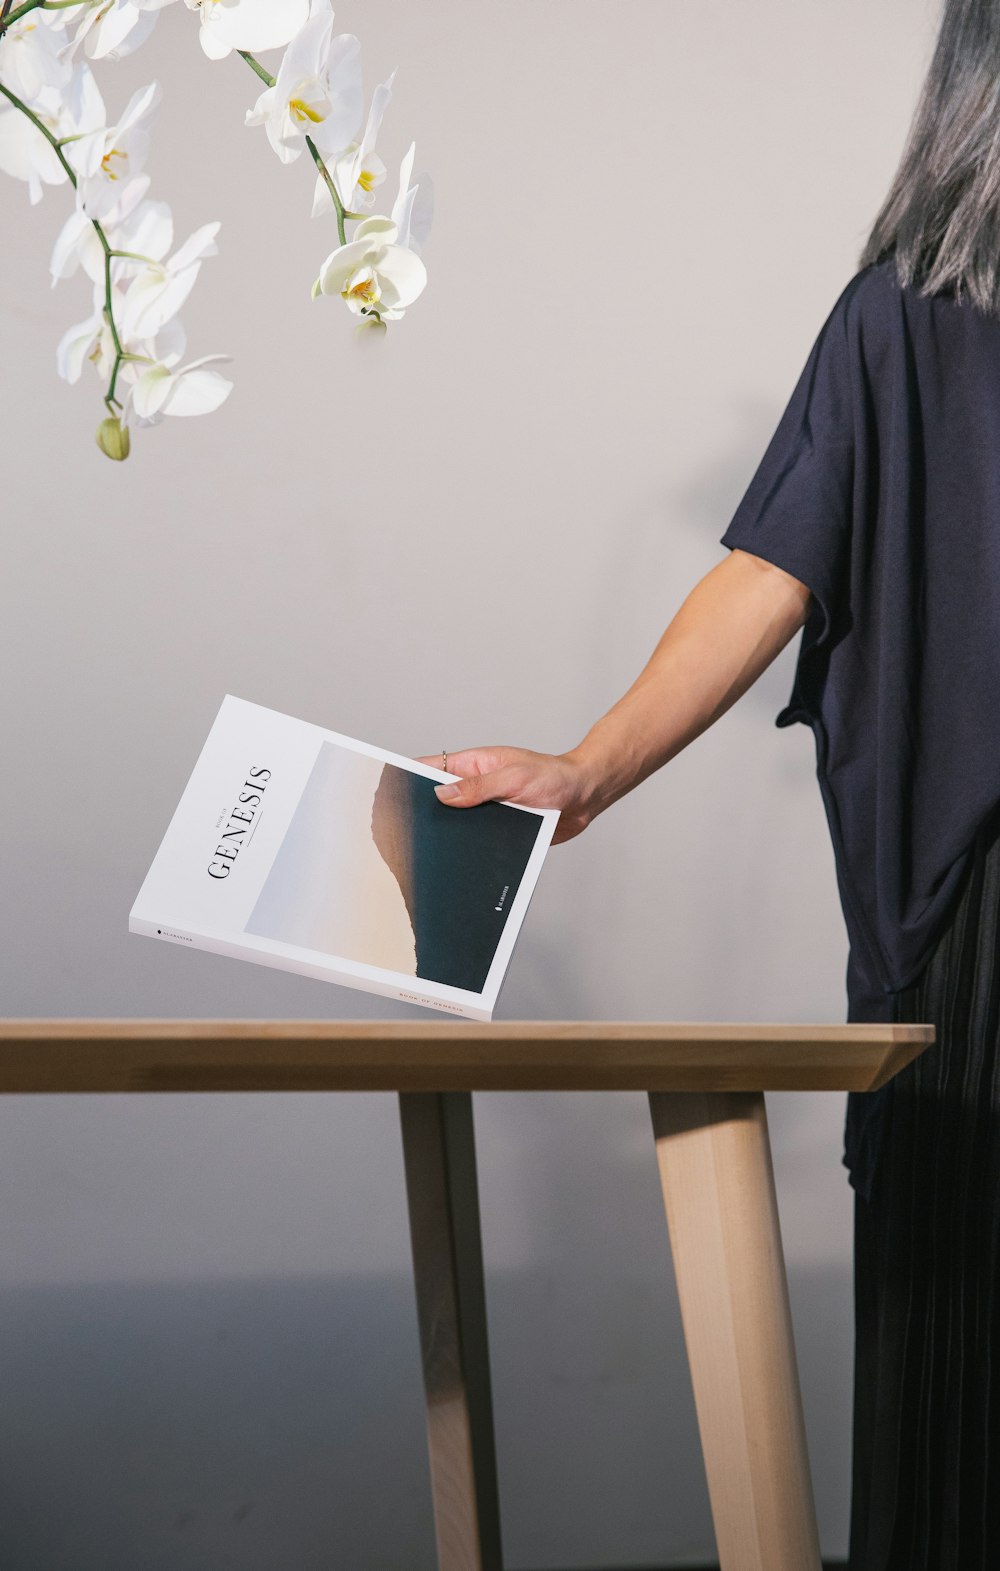 Frau steht neben dem Tisch und hält das Buch Genesis in der Hand